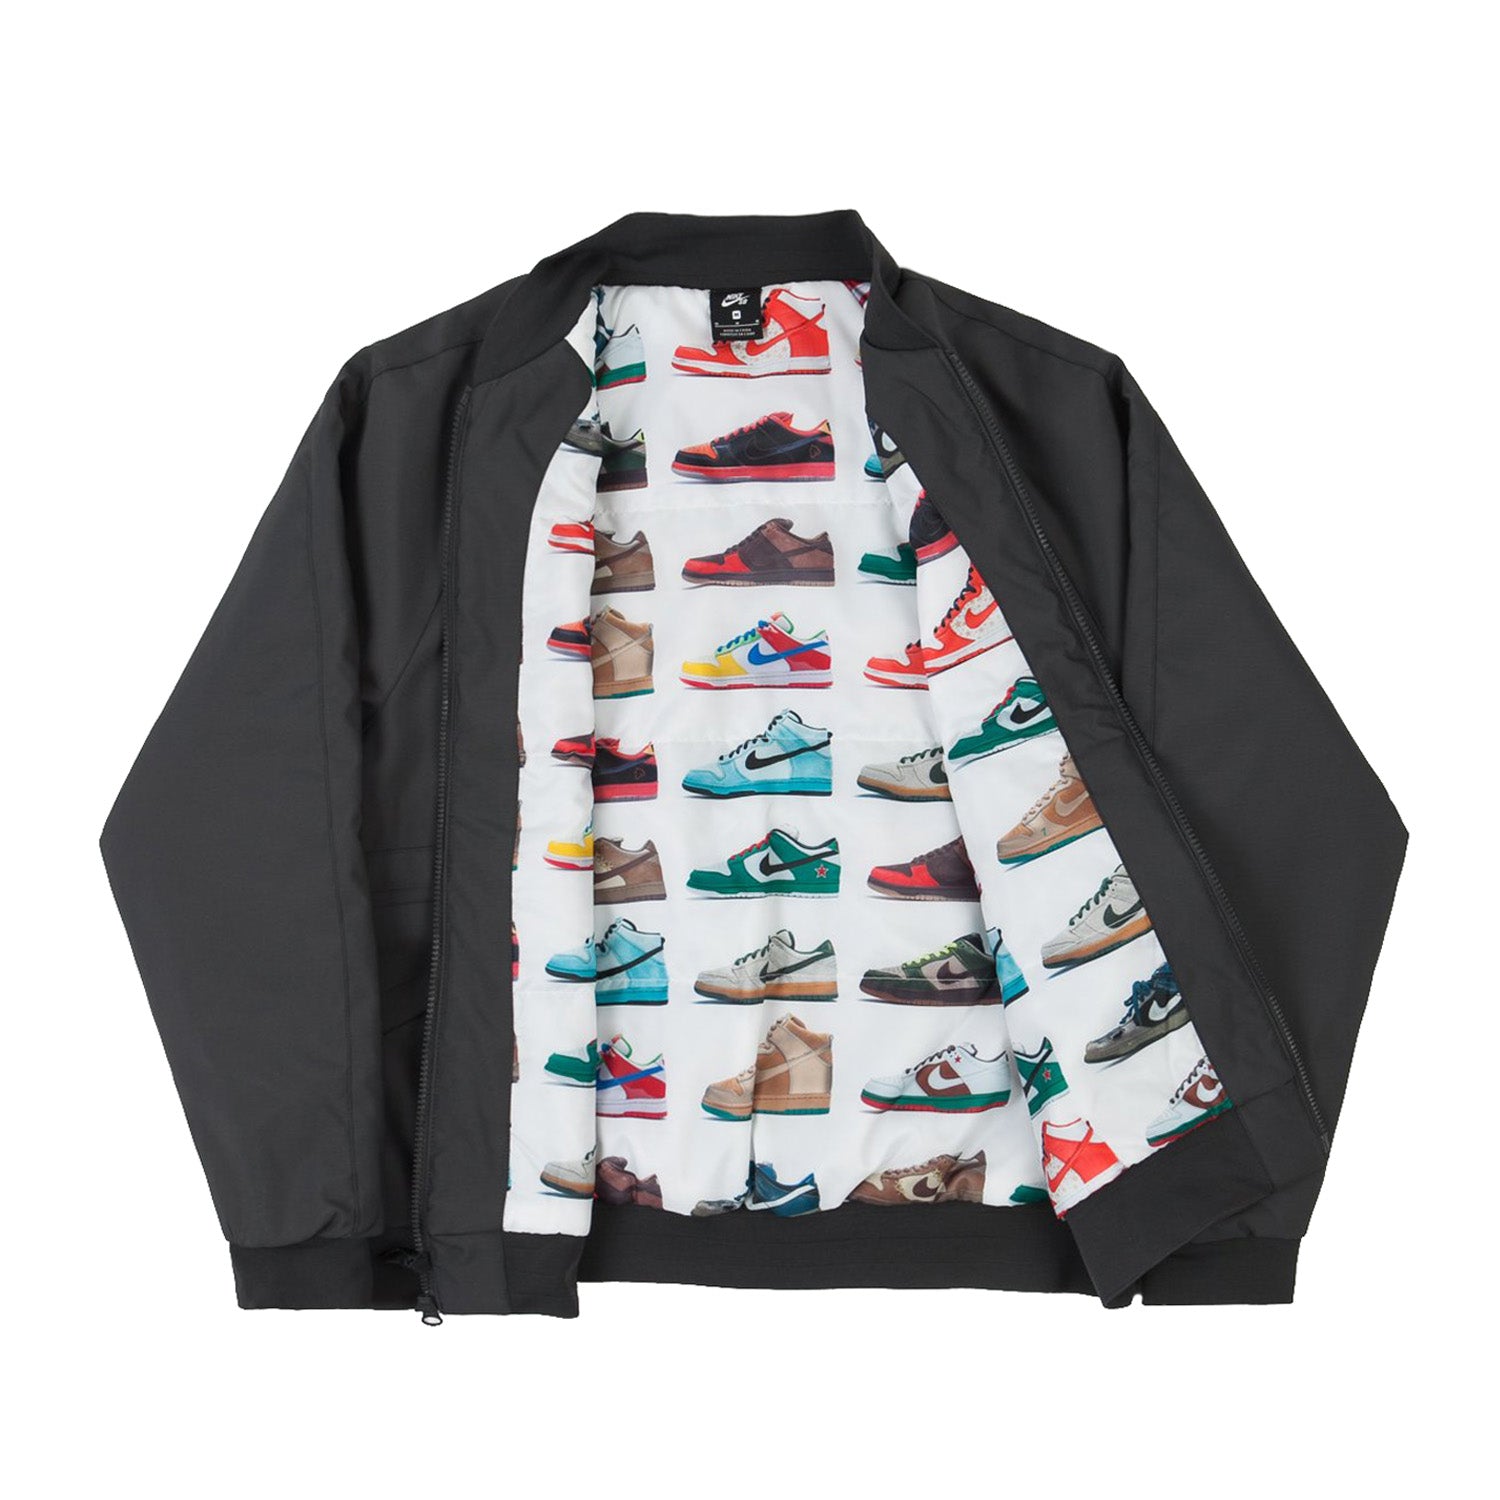 Nike SB Skate Jacket ISO DK Smoke Grey